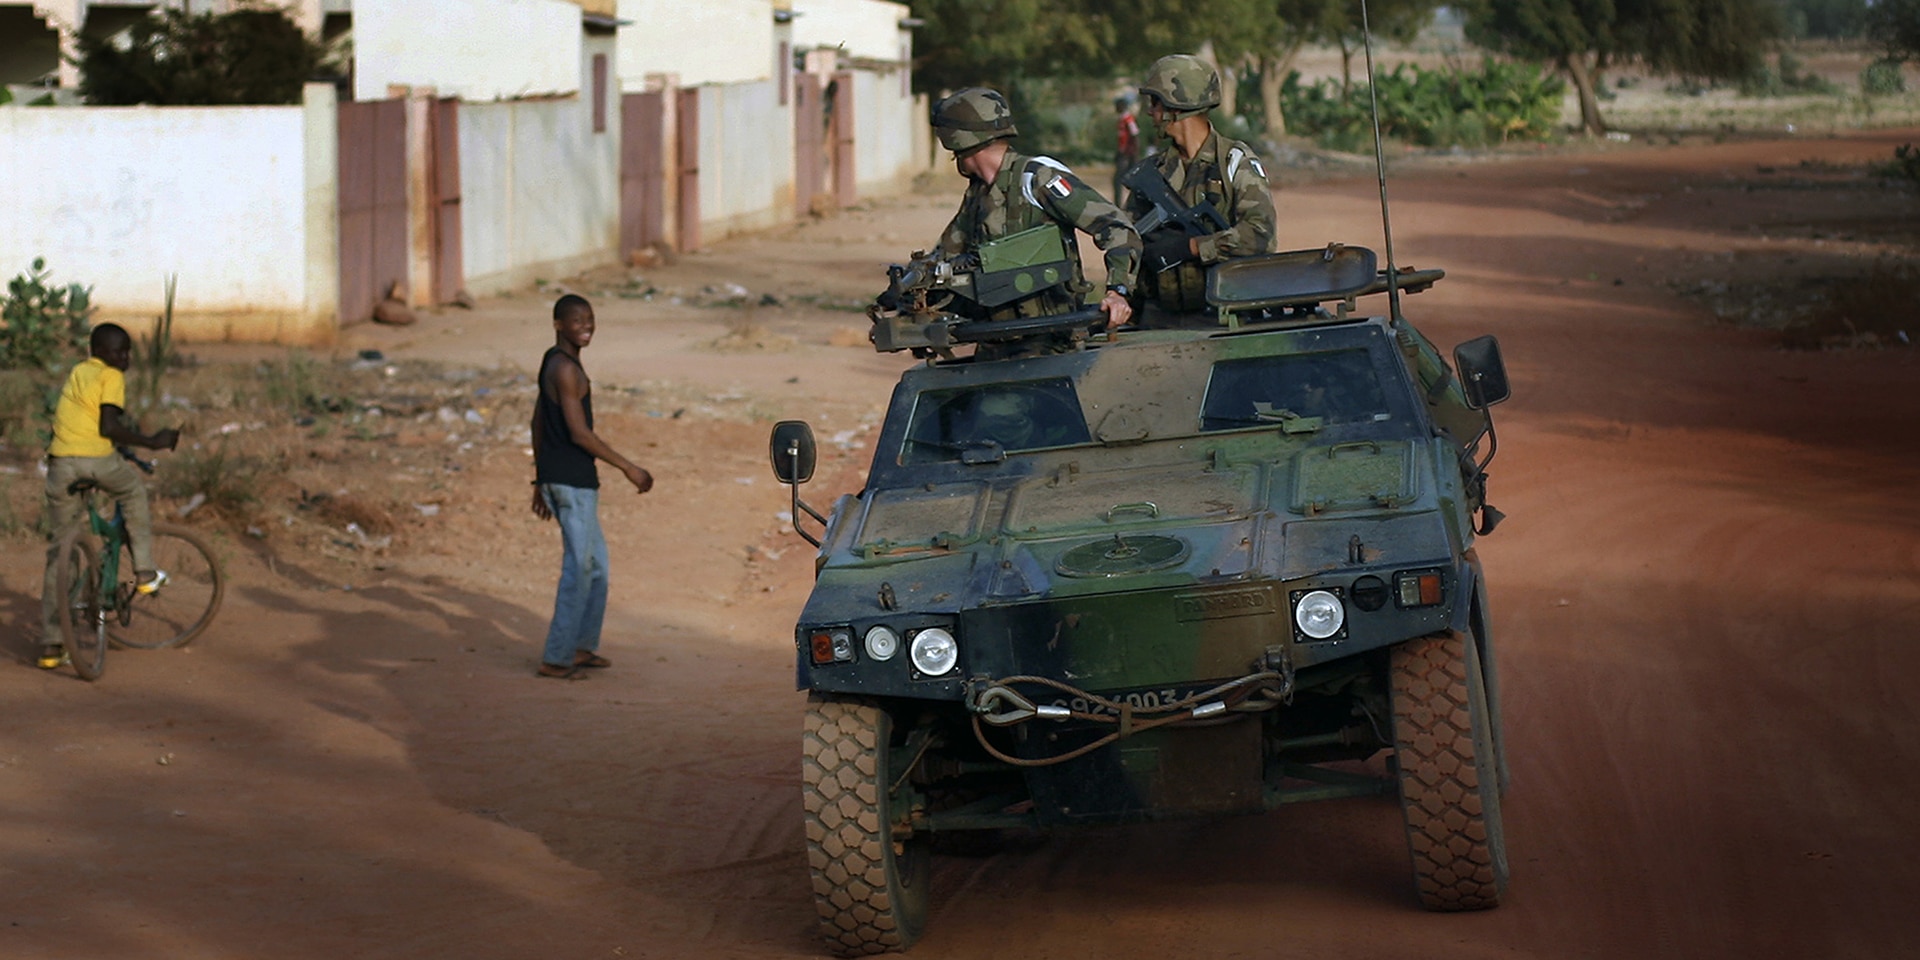 Un véhicule militaire transportant deux soldats passe devant des jeunes hommes dans la région en conflit du Mali.